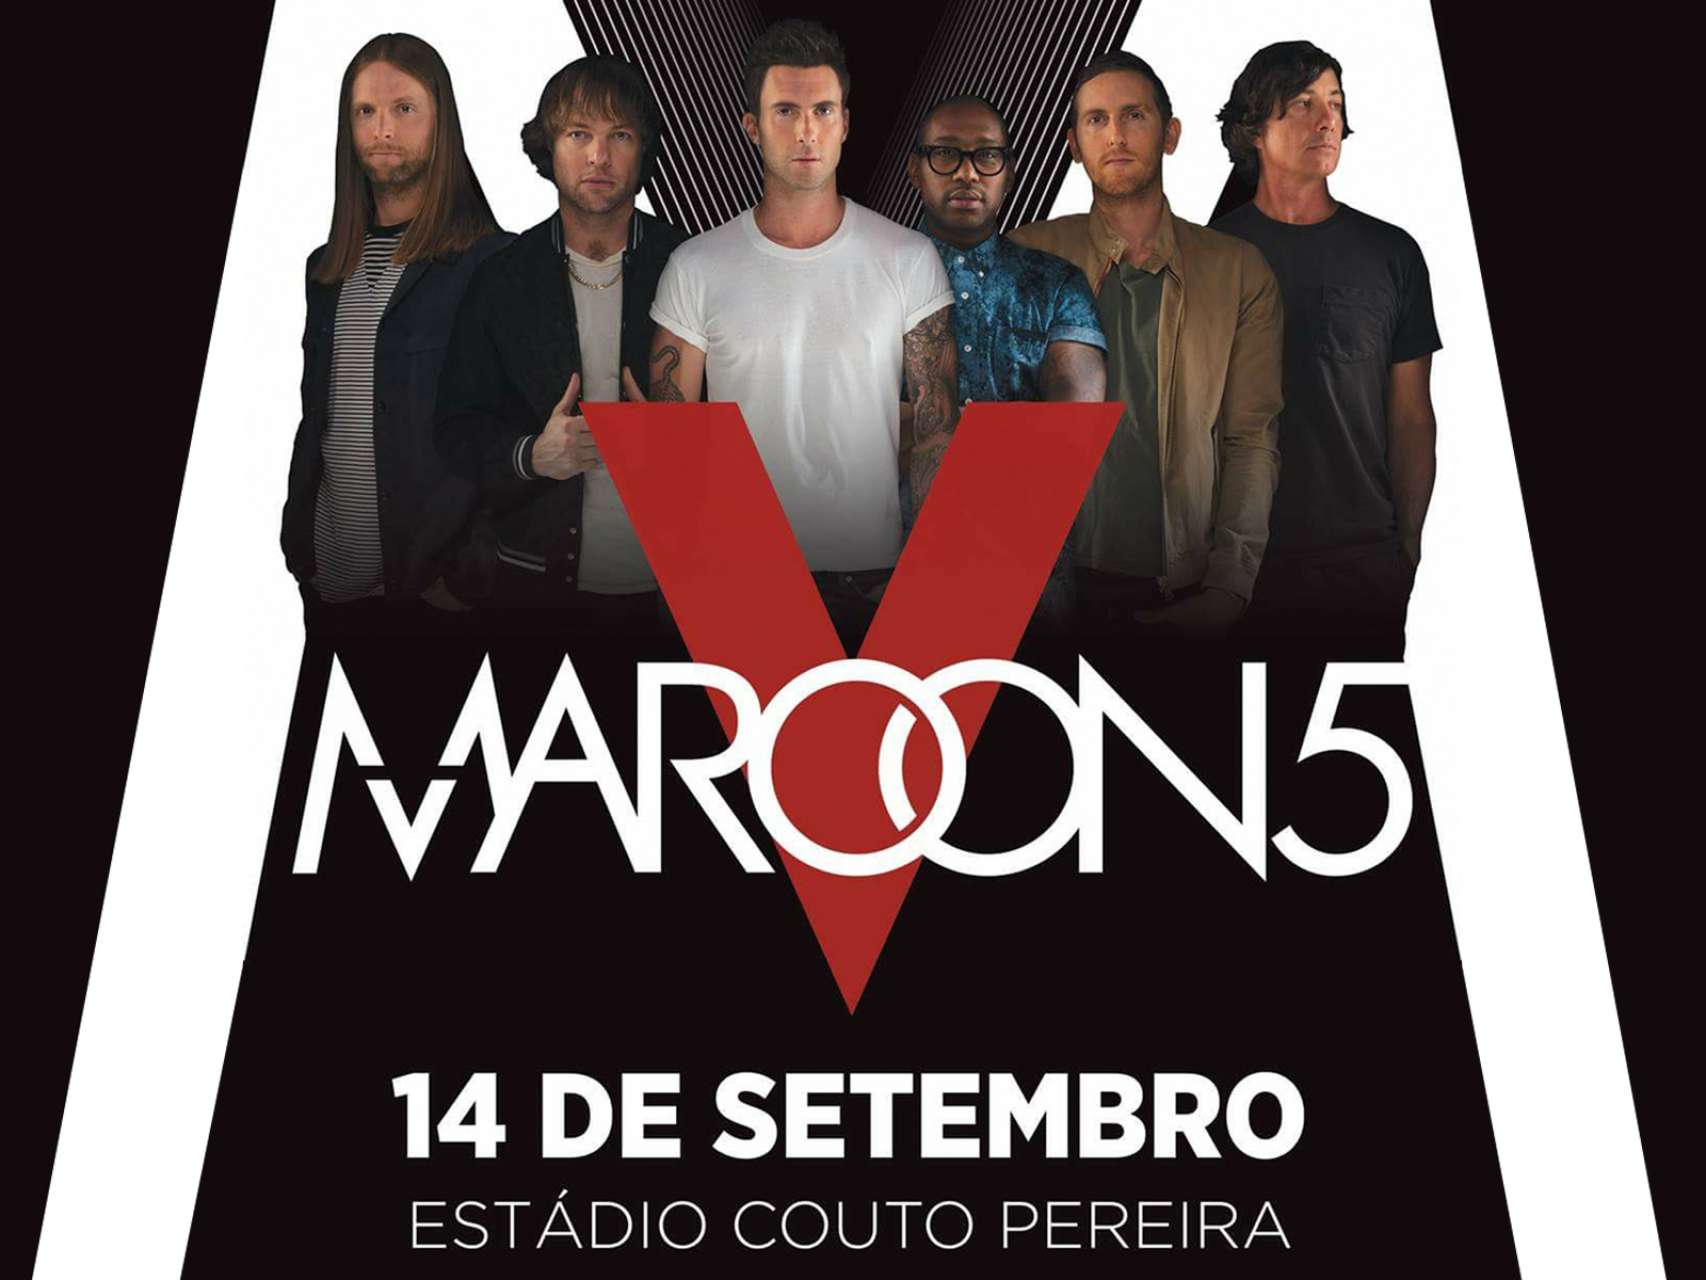 Incio das vendas Maroon 5